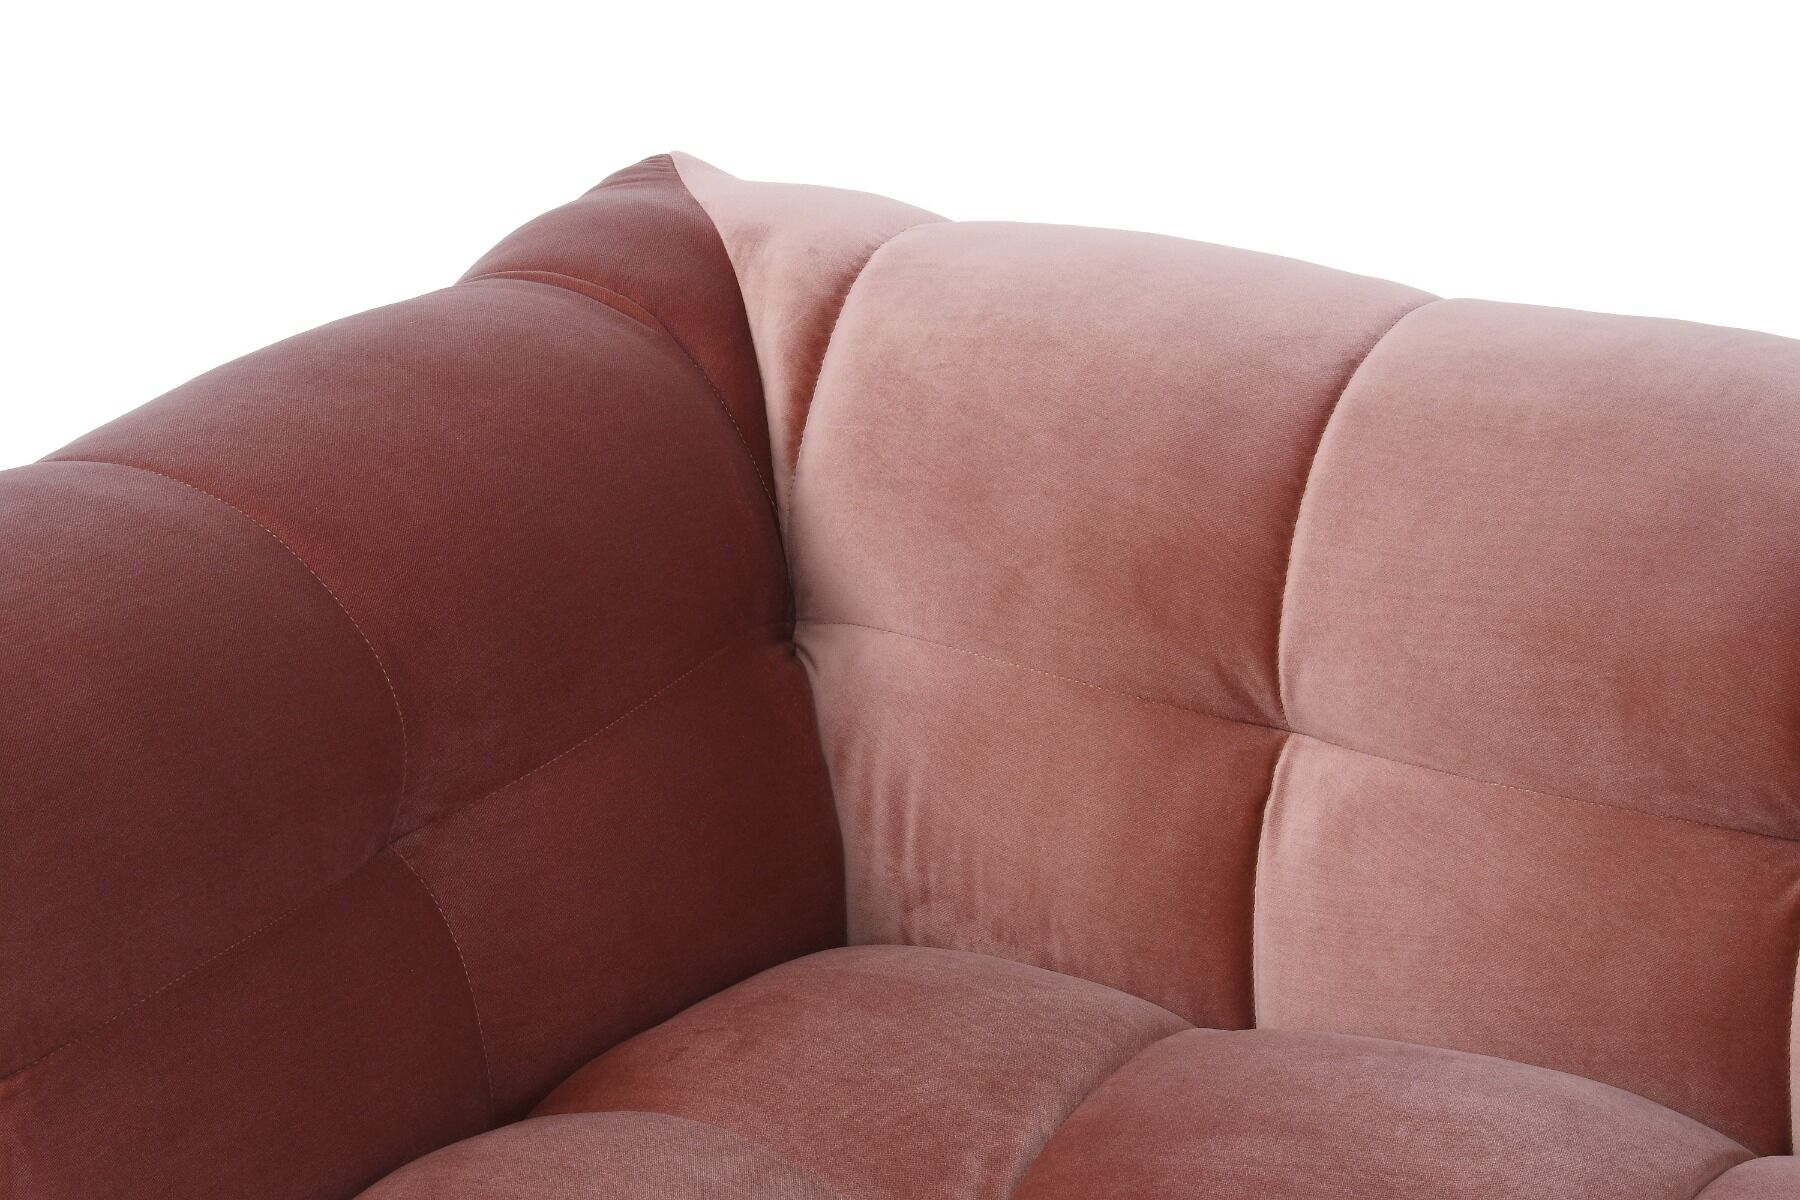 Sofa 3 osobowa Trina 236x105x68 cm